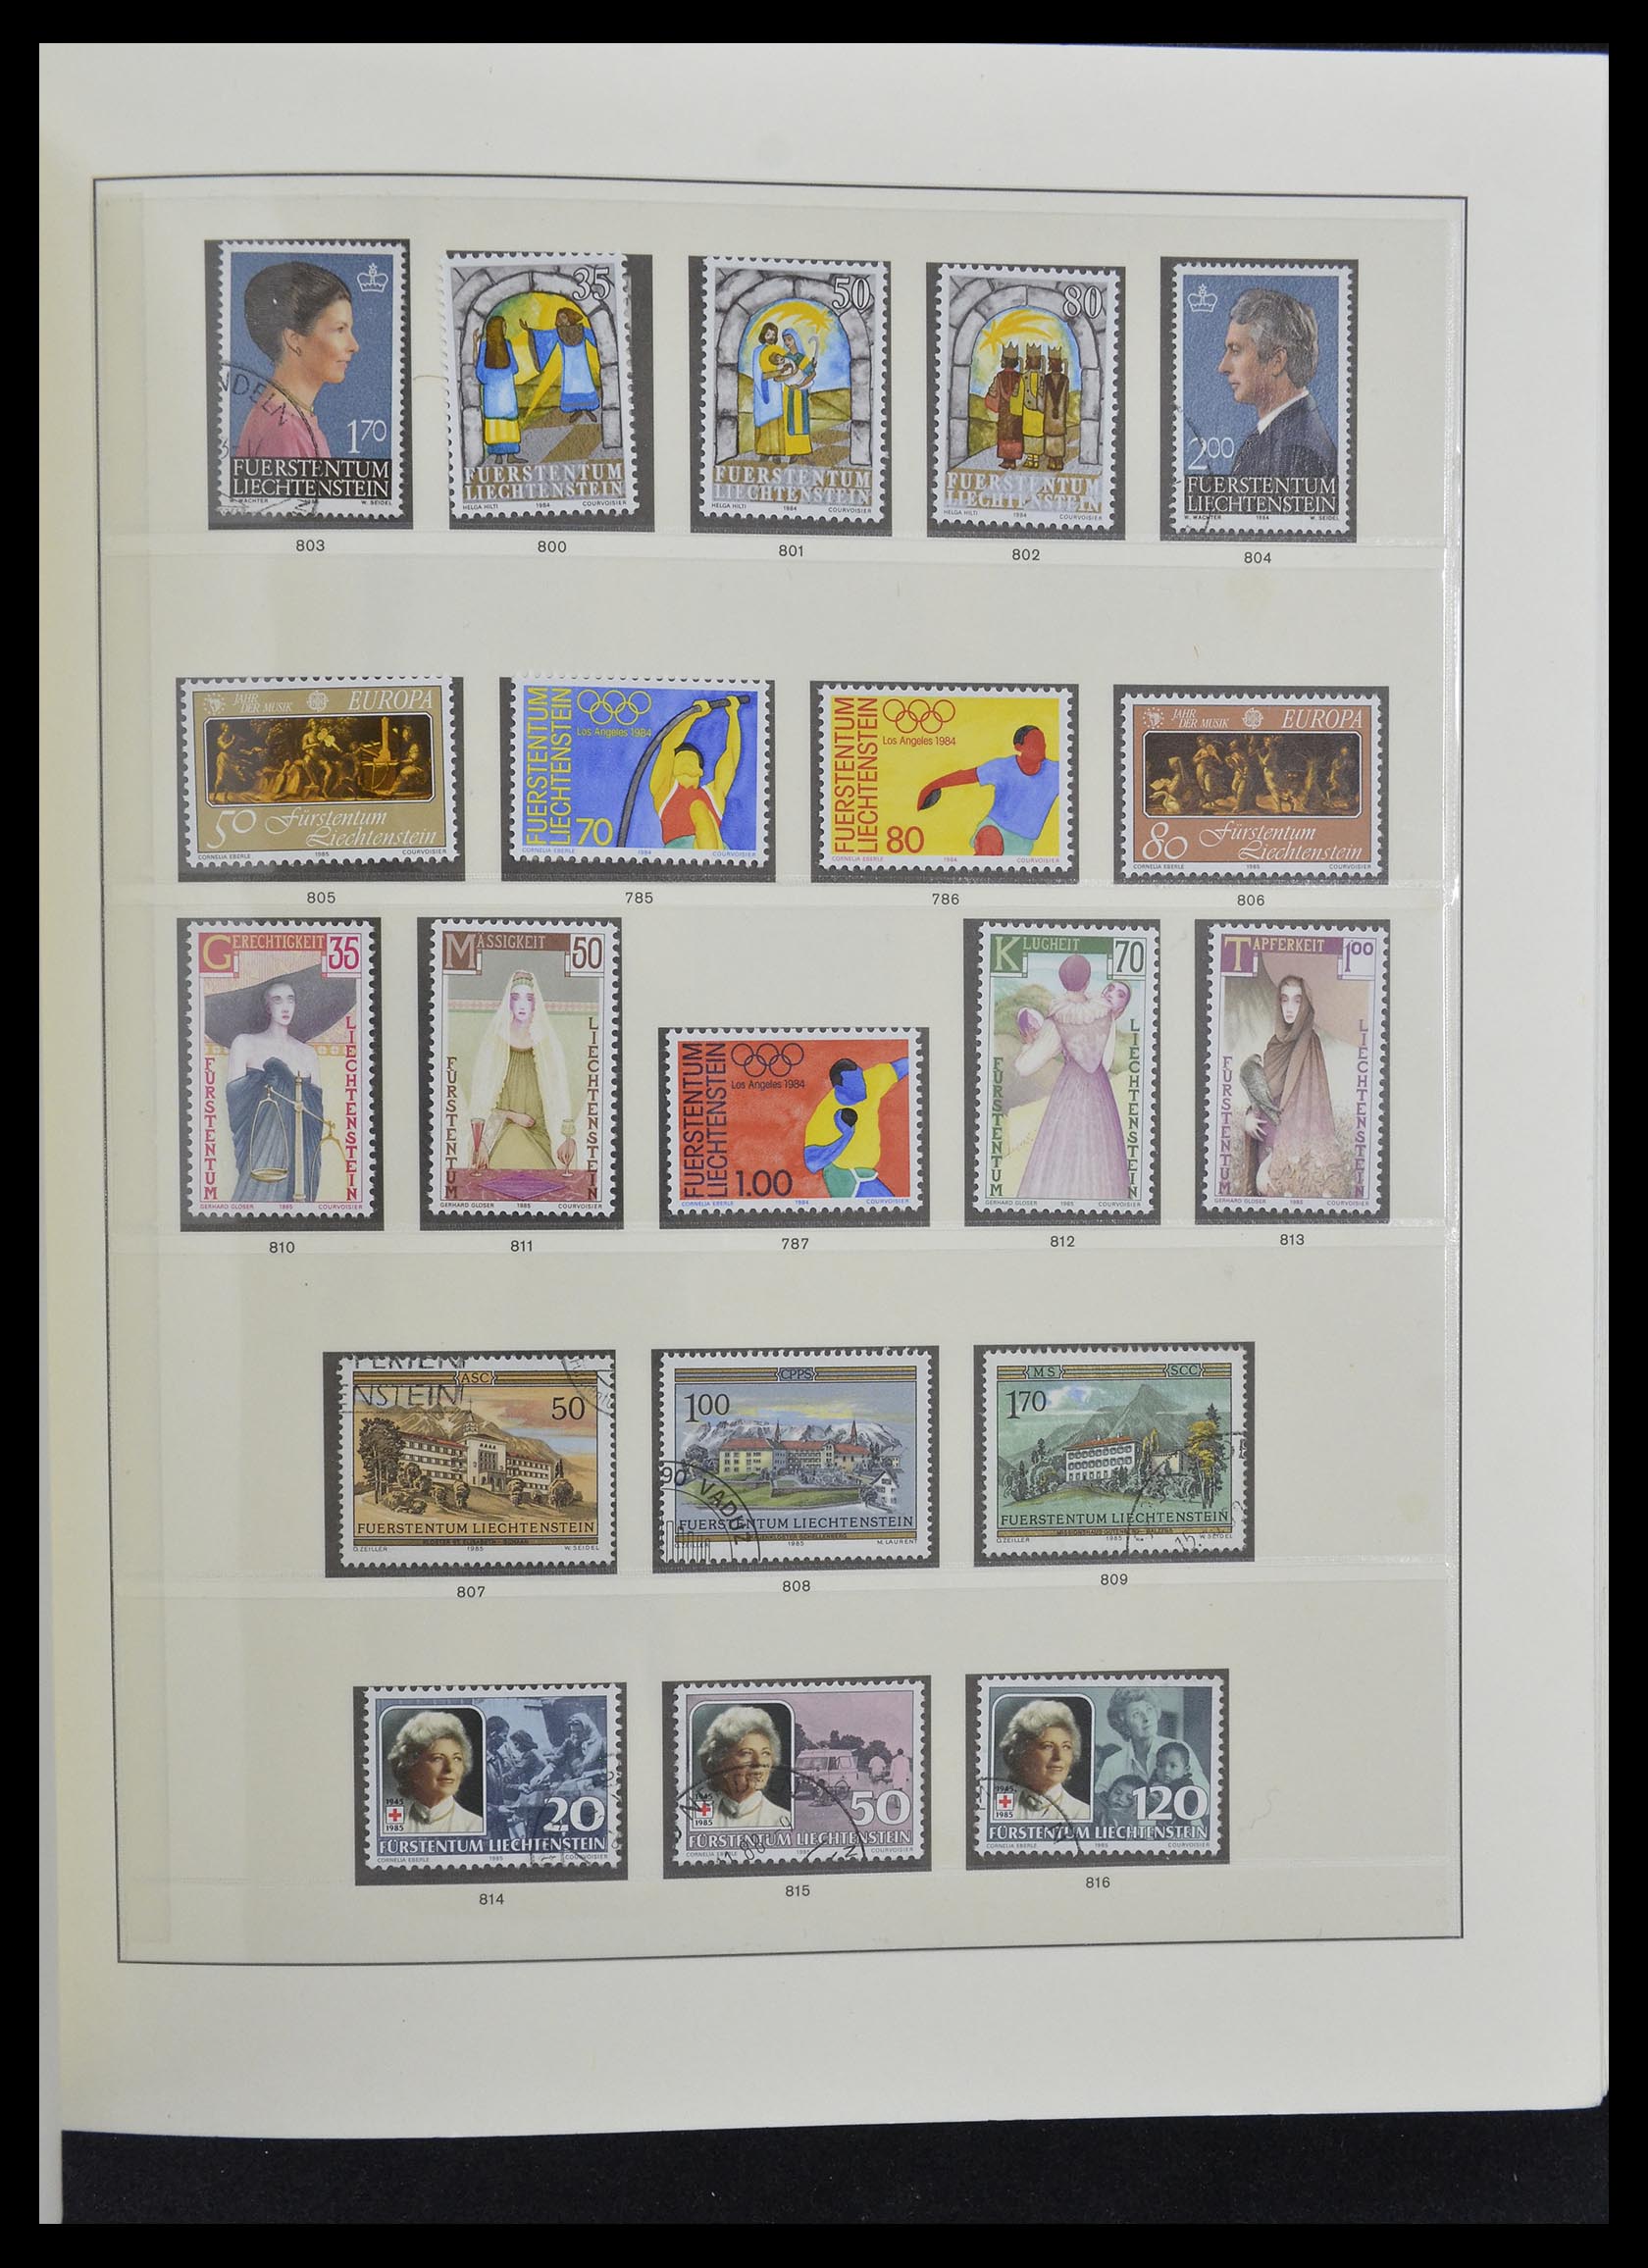 33140 040 - Stamp collection 33140 Liechtenstein 1912-1990.